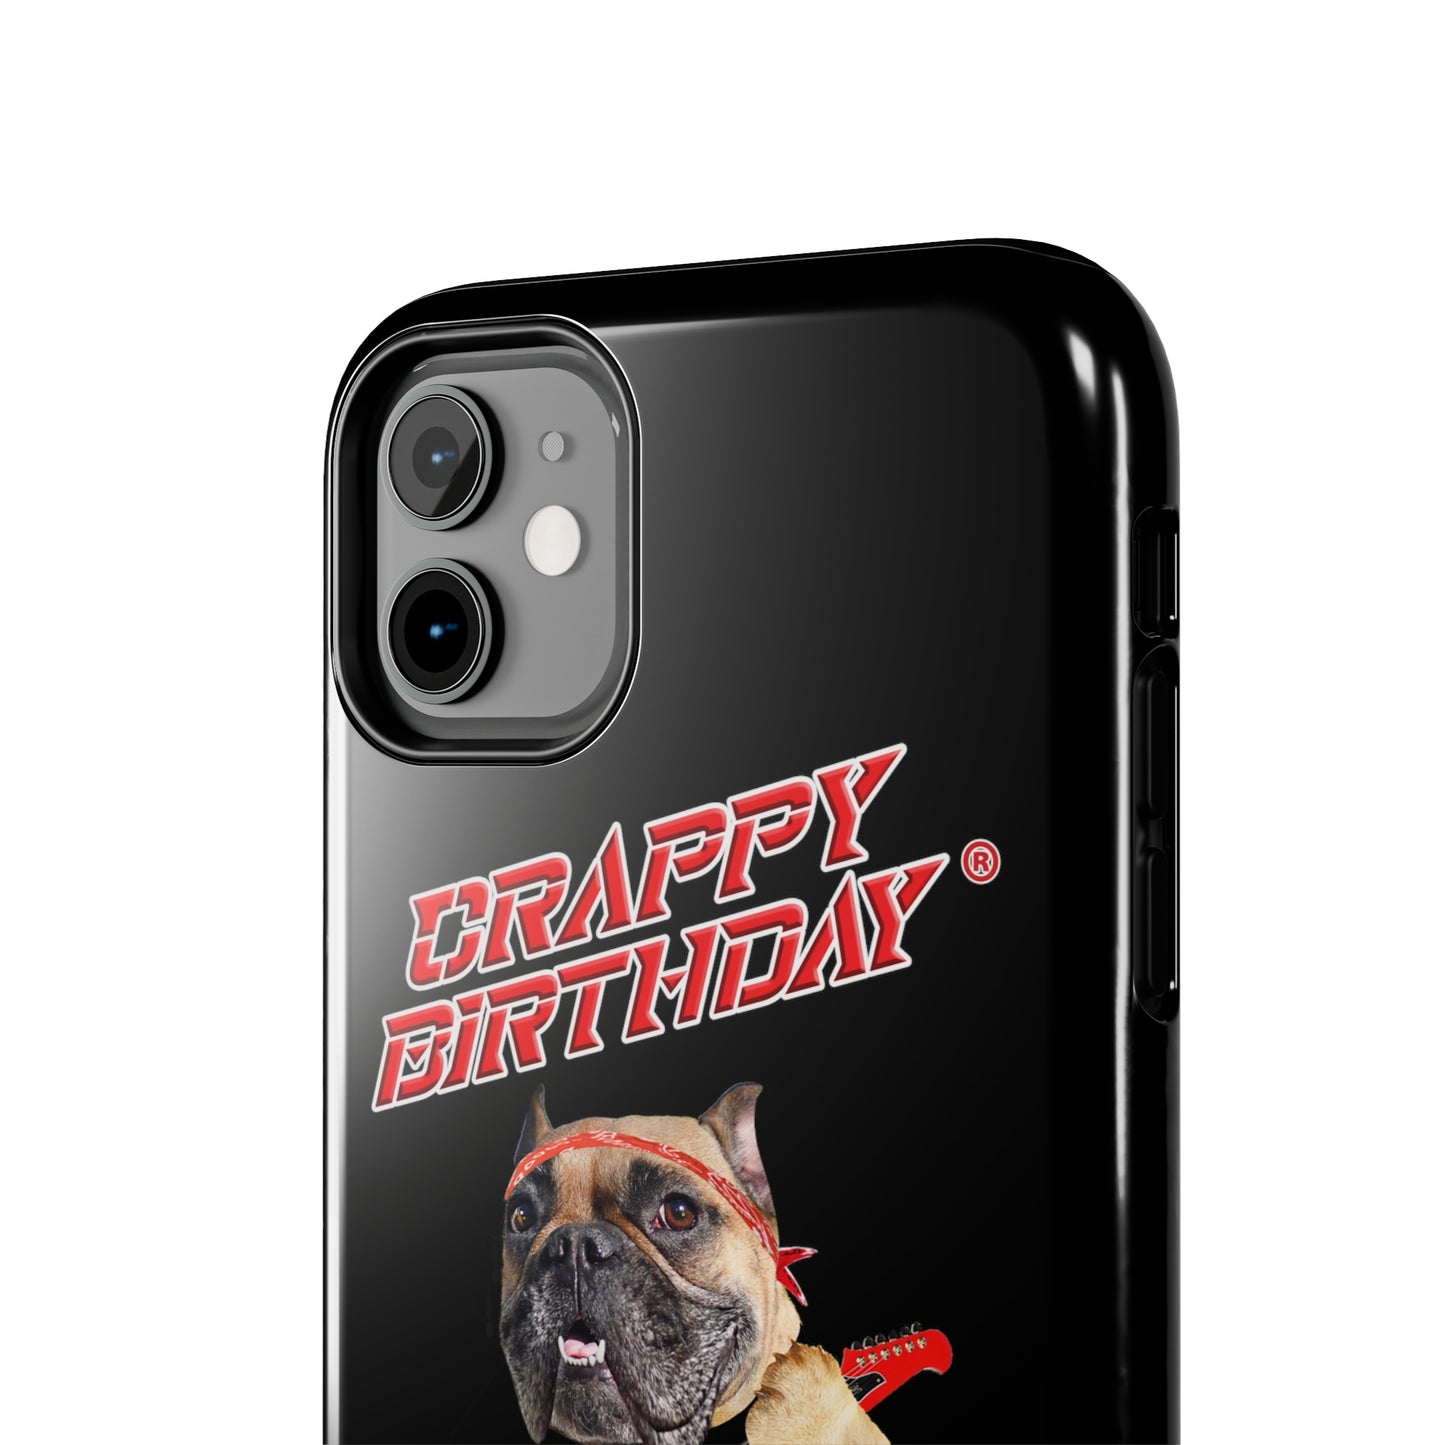 Crappy Birthday II Tough Phone Cases